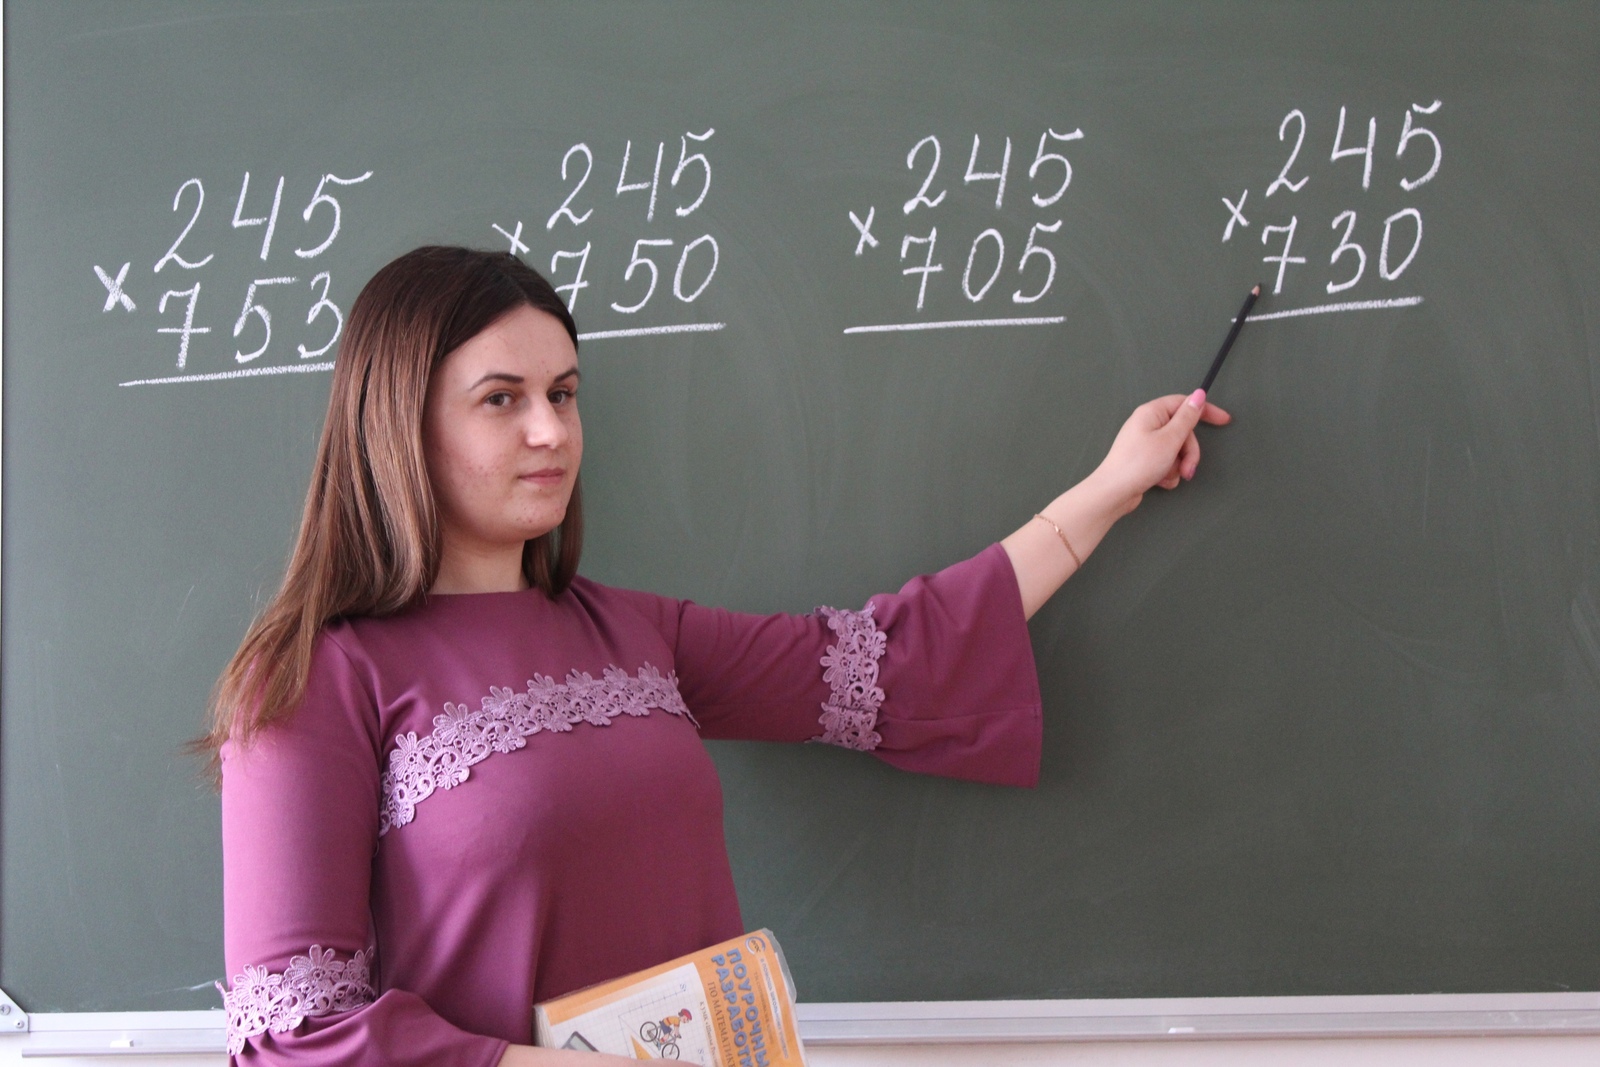 Сколько молодых учителей работает зианчуринских школах! Сейчас каждый из них может получить по 600 тысяч рублей! Что для этого нужно??